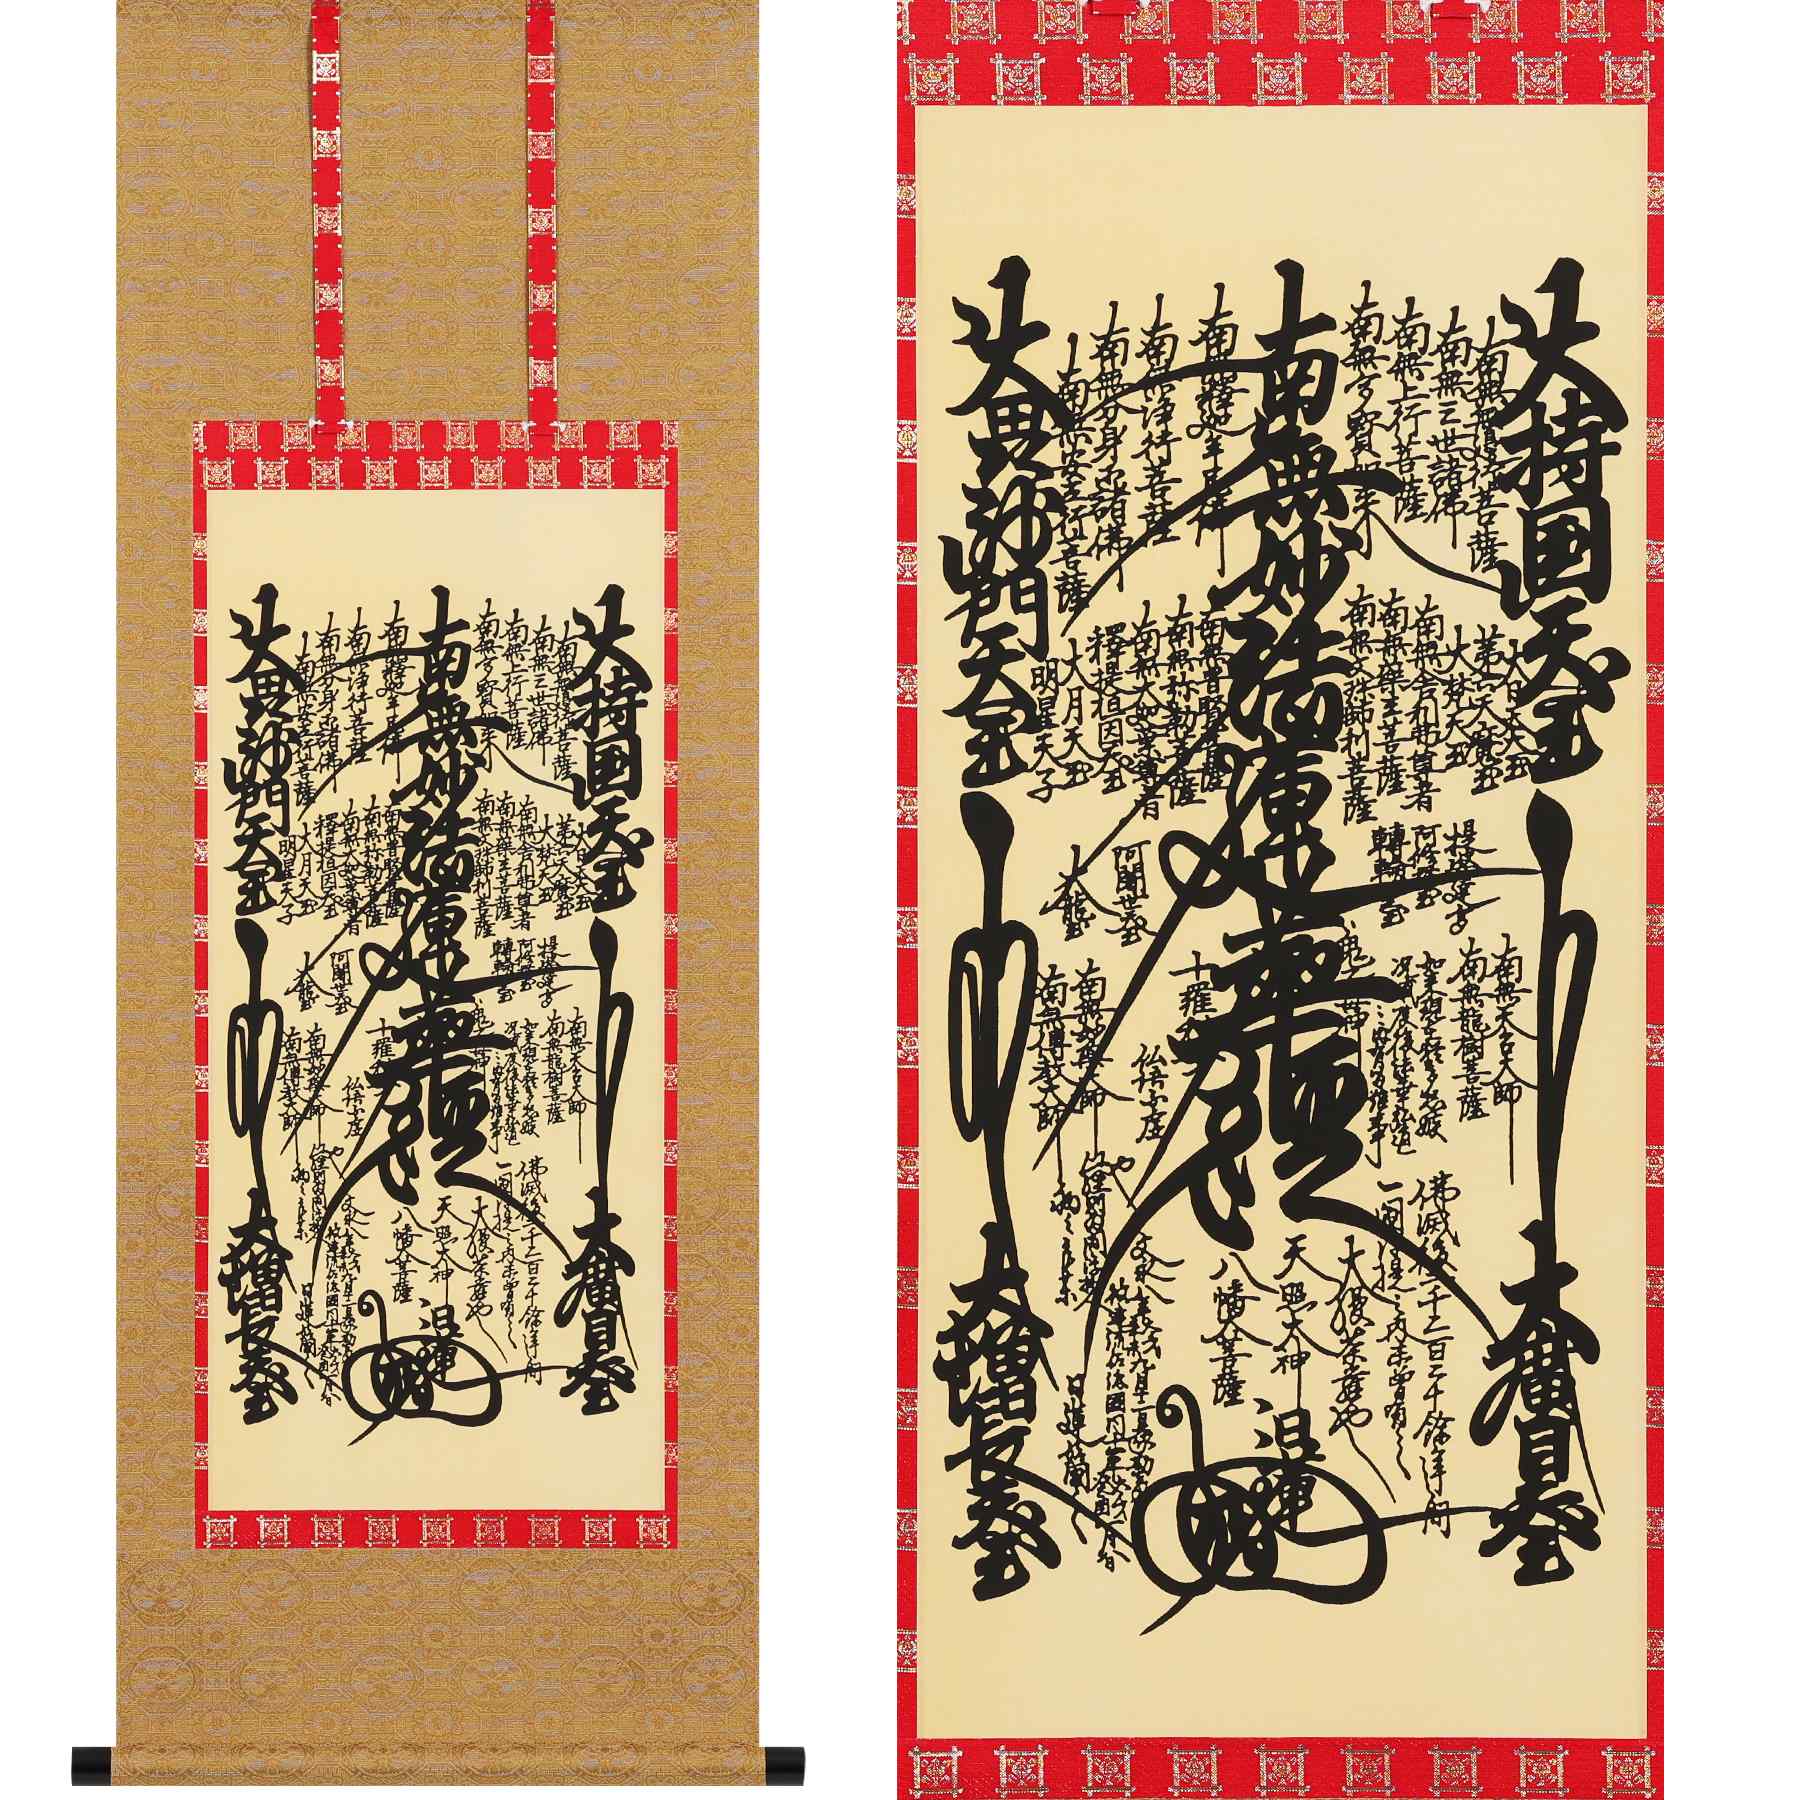 掛軸 「日蓮曼荼羅」 尺三 四尺丈: 北方町ANAのふるさと納税